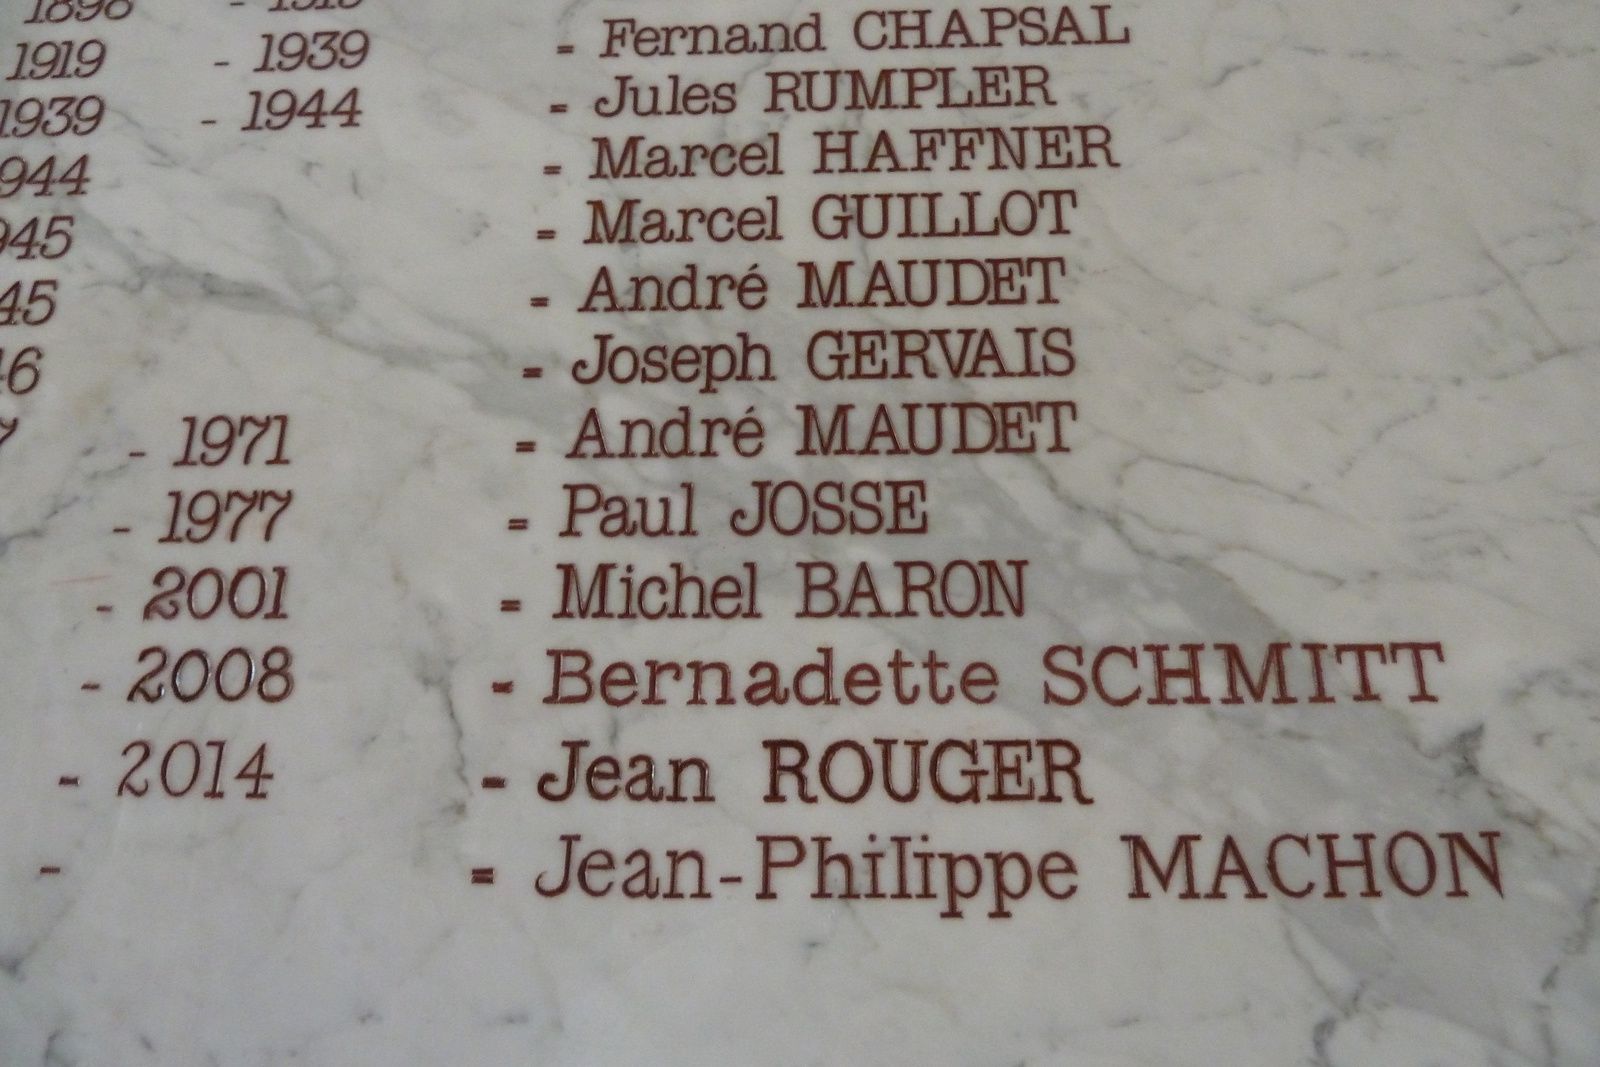 Une même année.. Jean Rouger c'est un départ, Jean-Philippe Machon c'est une arrivée. Mais question: On inscrit les noms avant d'avoir reçu le diplôme de satisfaction...! Enfin c'est mieux que pour ceux dont les noms figurent sur un fameux monuments de Saintes, avec la mention " M.P.L.F ". Mais autre question: Quelles sont les critères pour l'inscription sur ce monument, certes glorieux, mais fatal...?